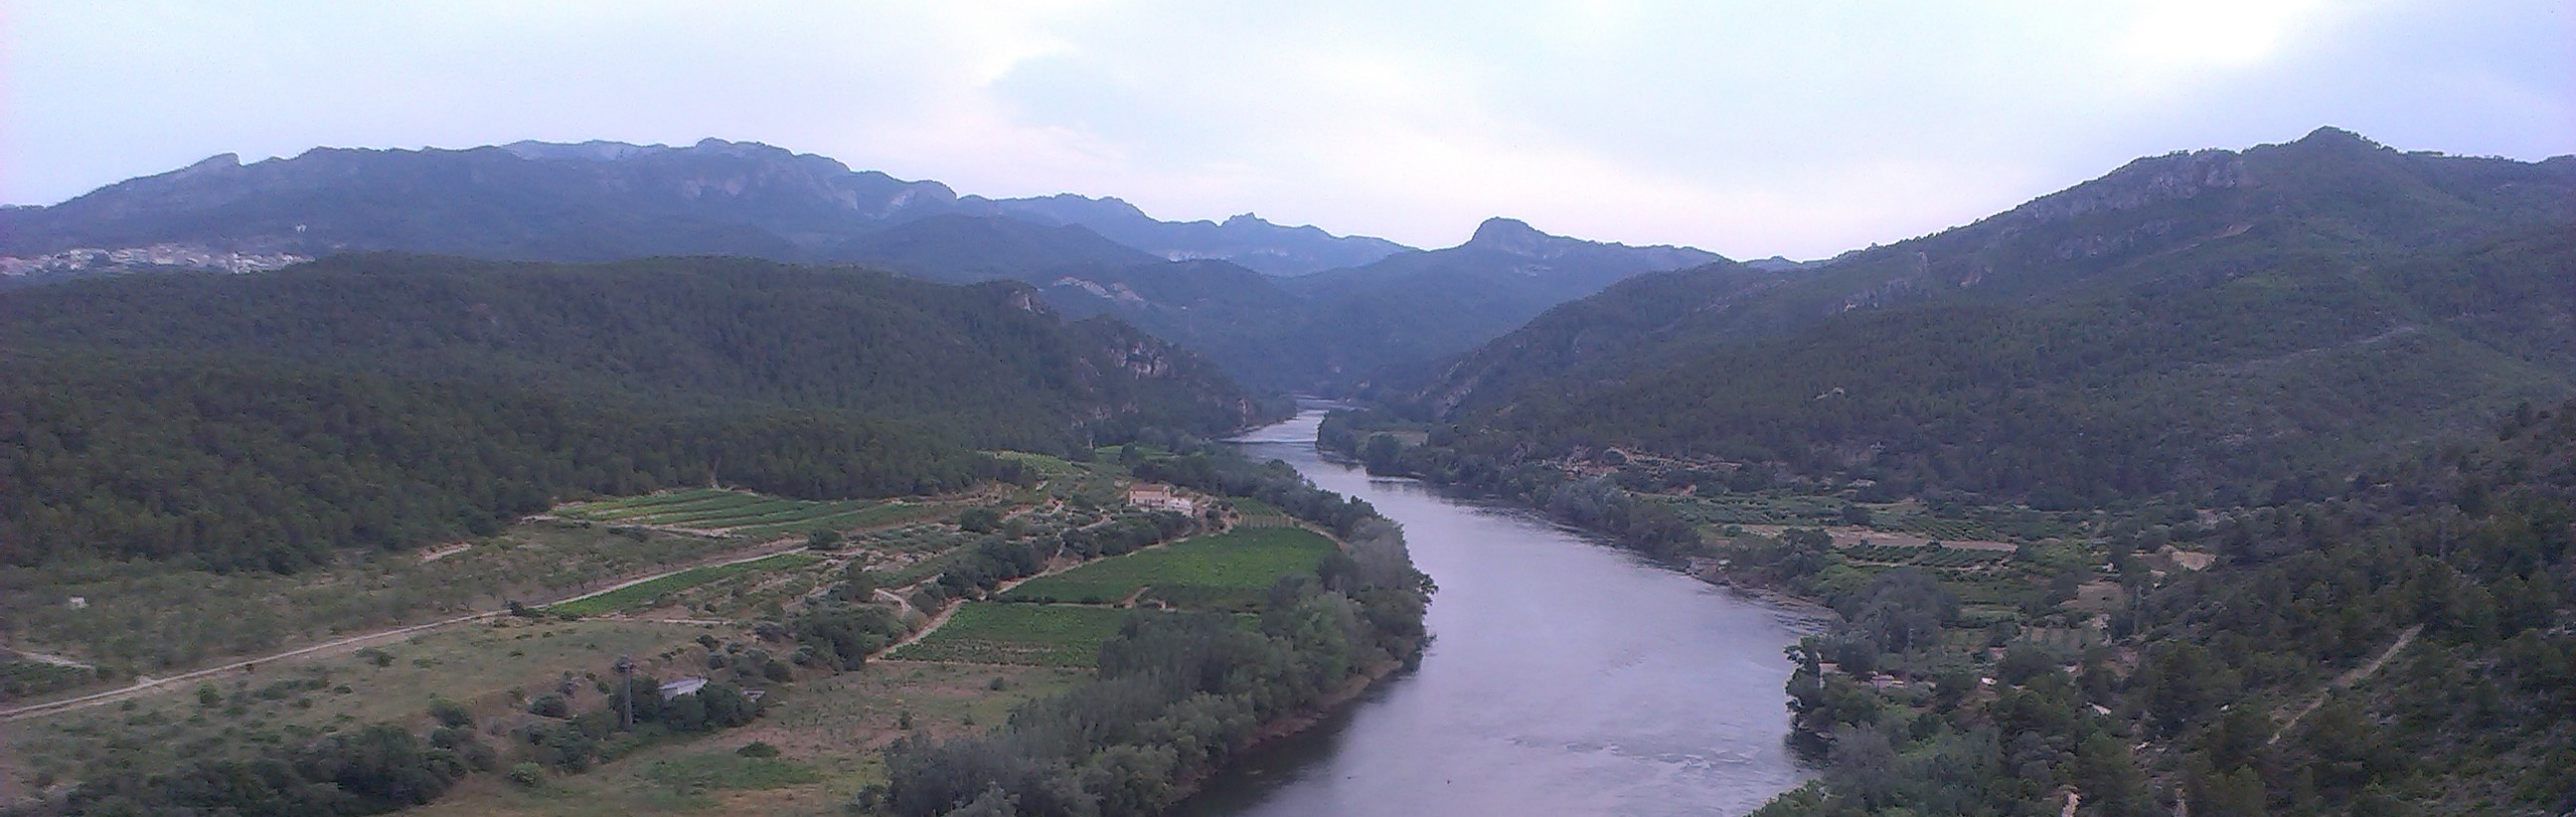 Concluye la adecuación morfológica y restauración ambiental del Ebro en El Estajao, Alfaro (La Rioja)